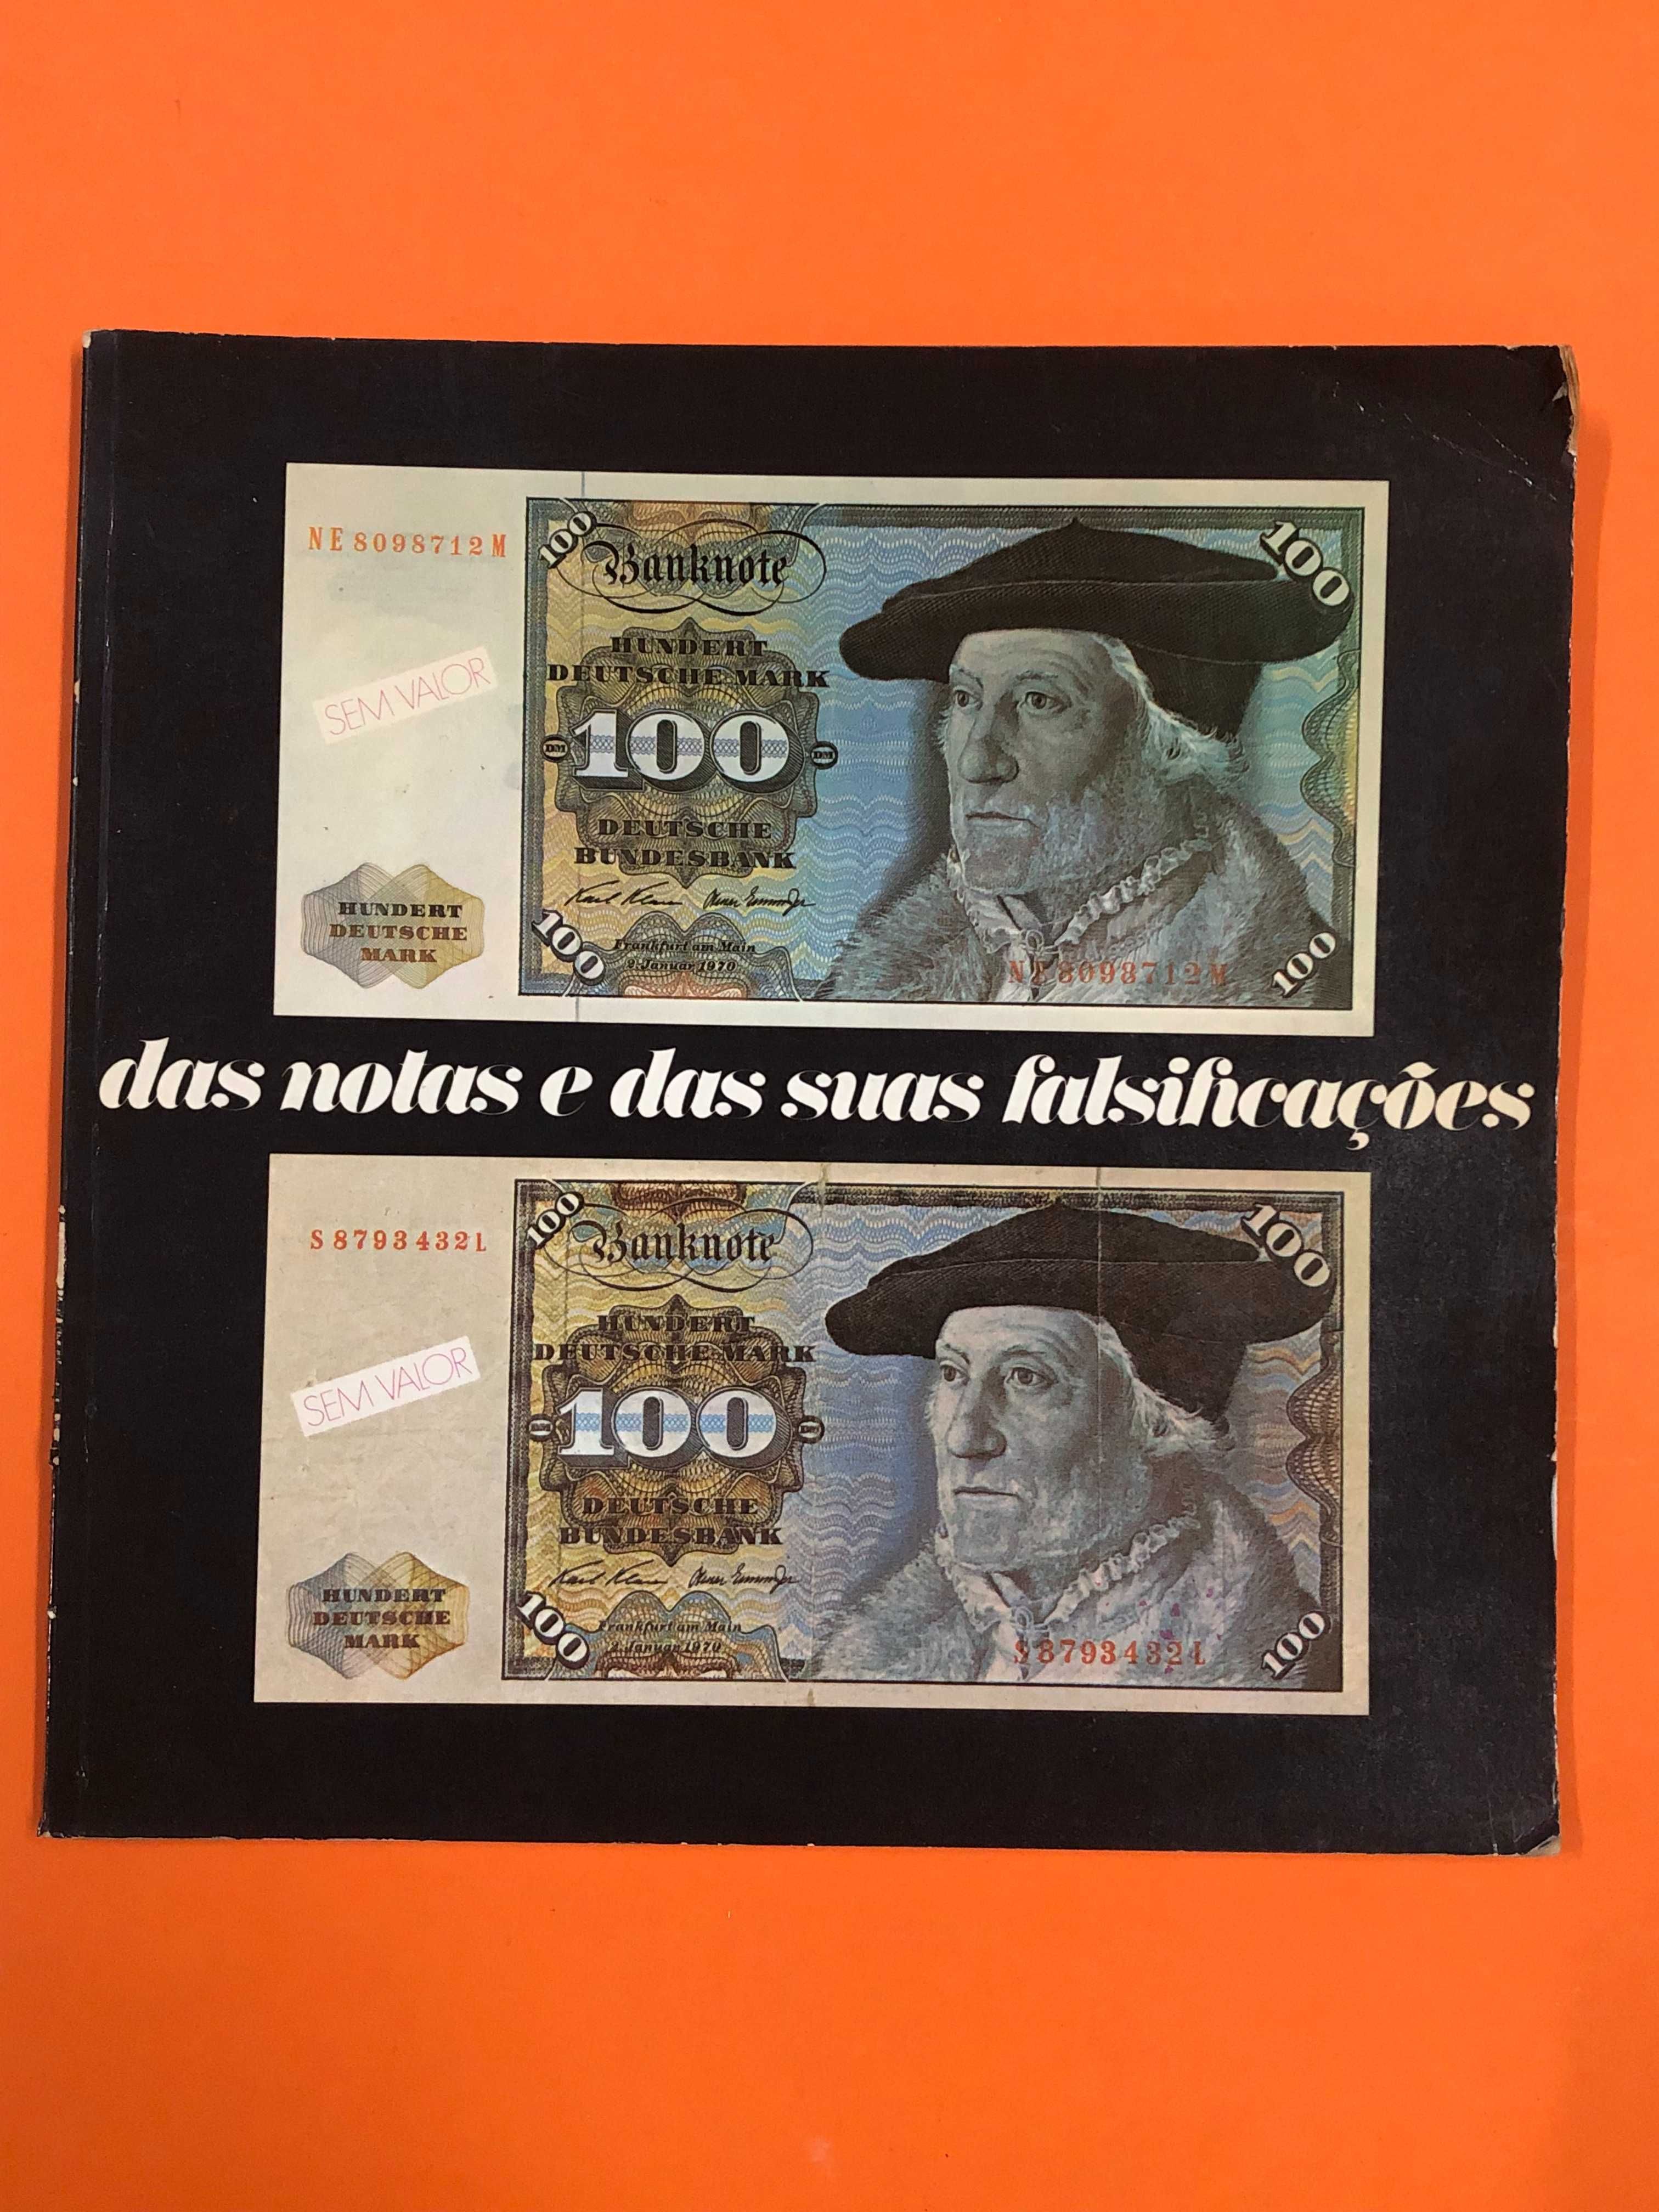 Das notas e das suas falsificações - Banco Português do Atlântico